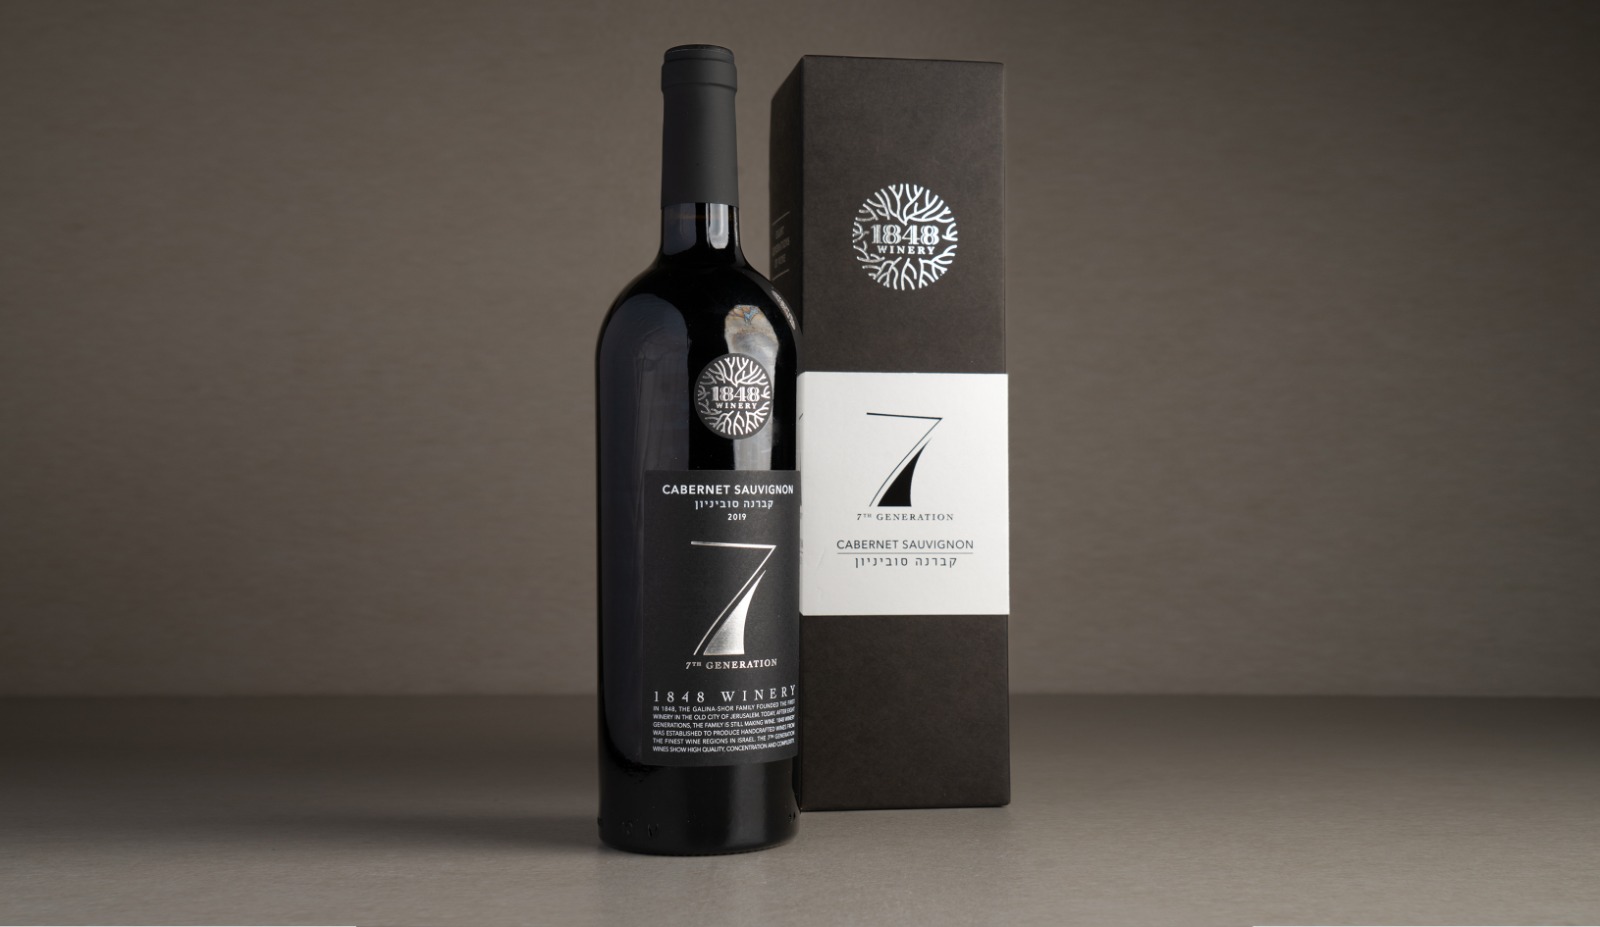 יין אדום יבש "1848" דור 7 קברנה סוביניון 2019